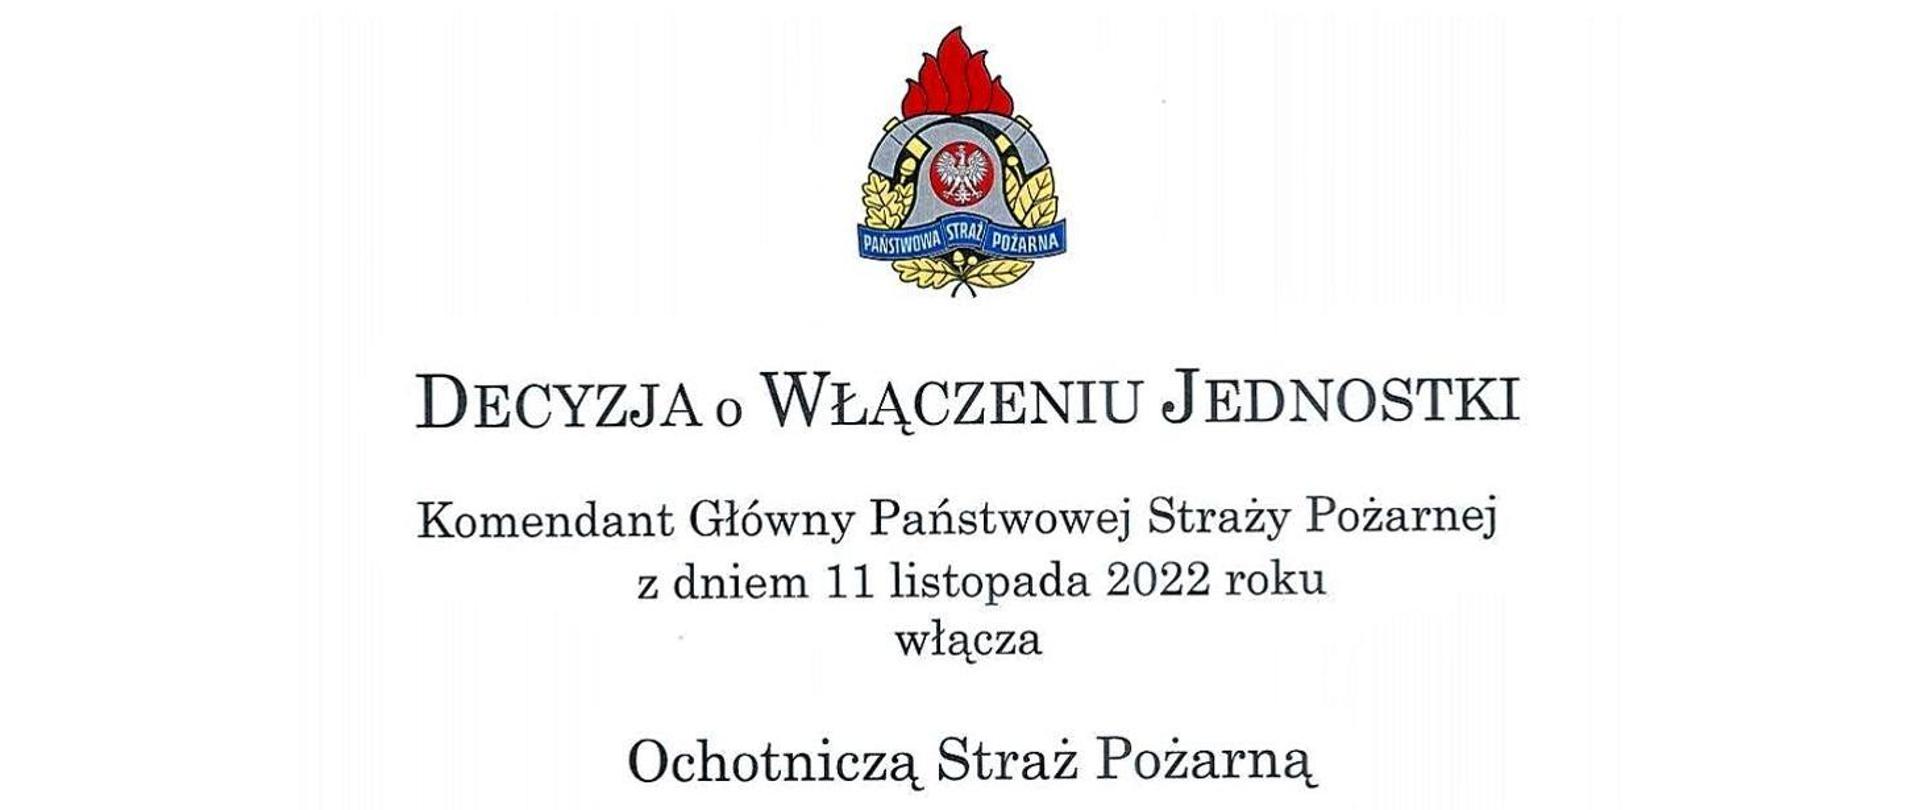 Jednostka OSP Konopki włączona do Krajowego Systemu Ratowniczo-Gaśniczego.